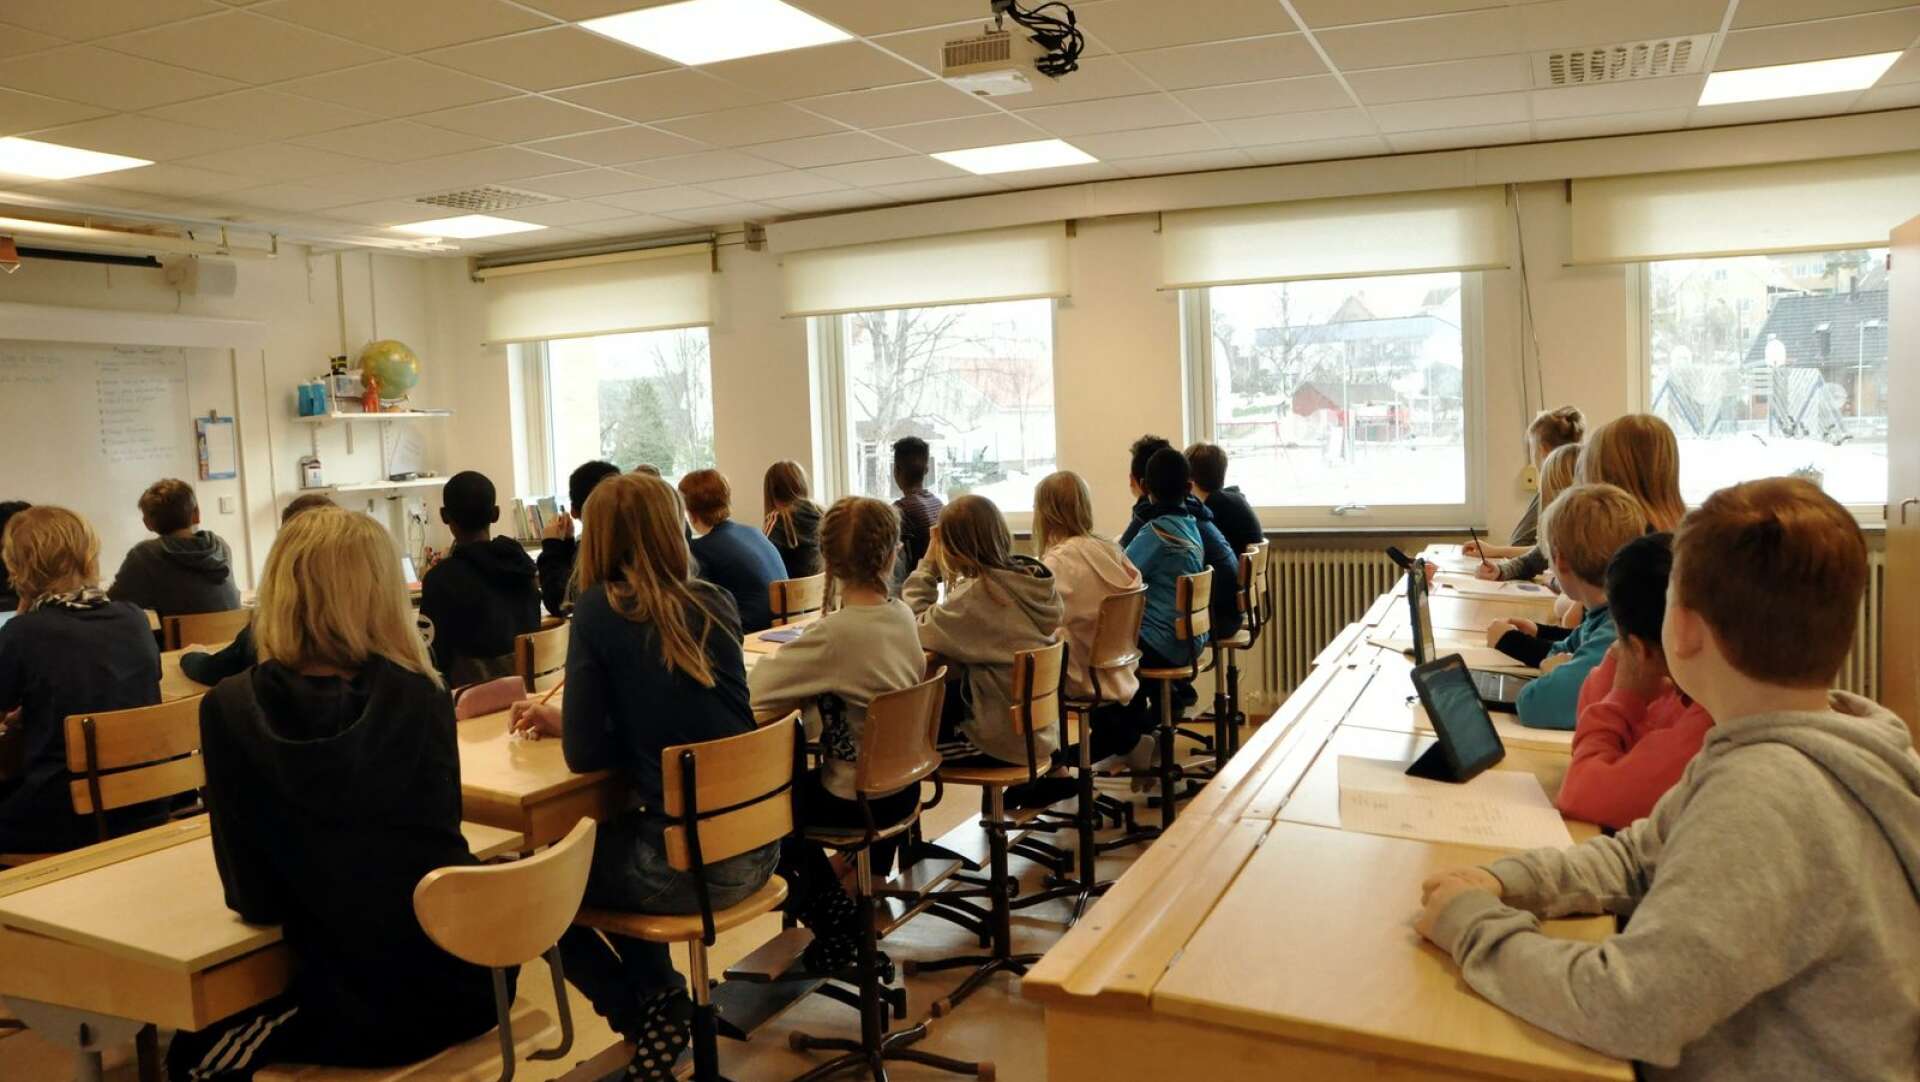 Bengtsfors är landets sjätte bästa skolkommun, enligt en ranking gjord av Lärarförbundet.